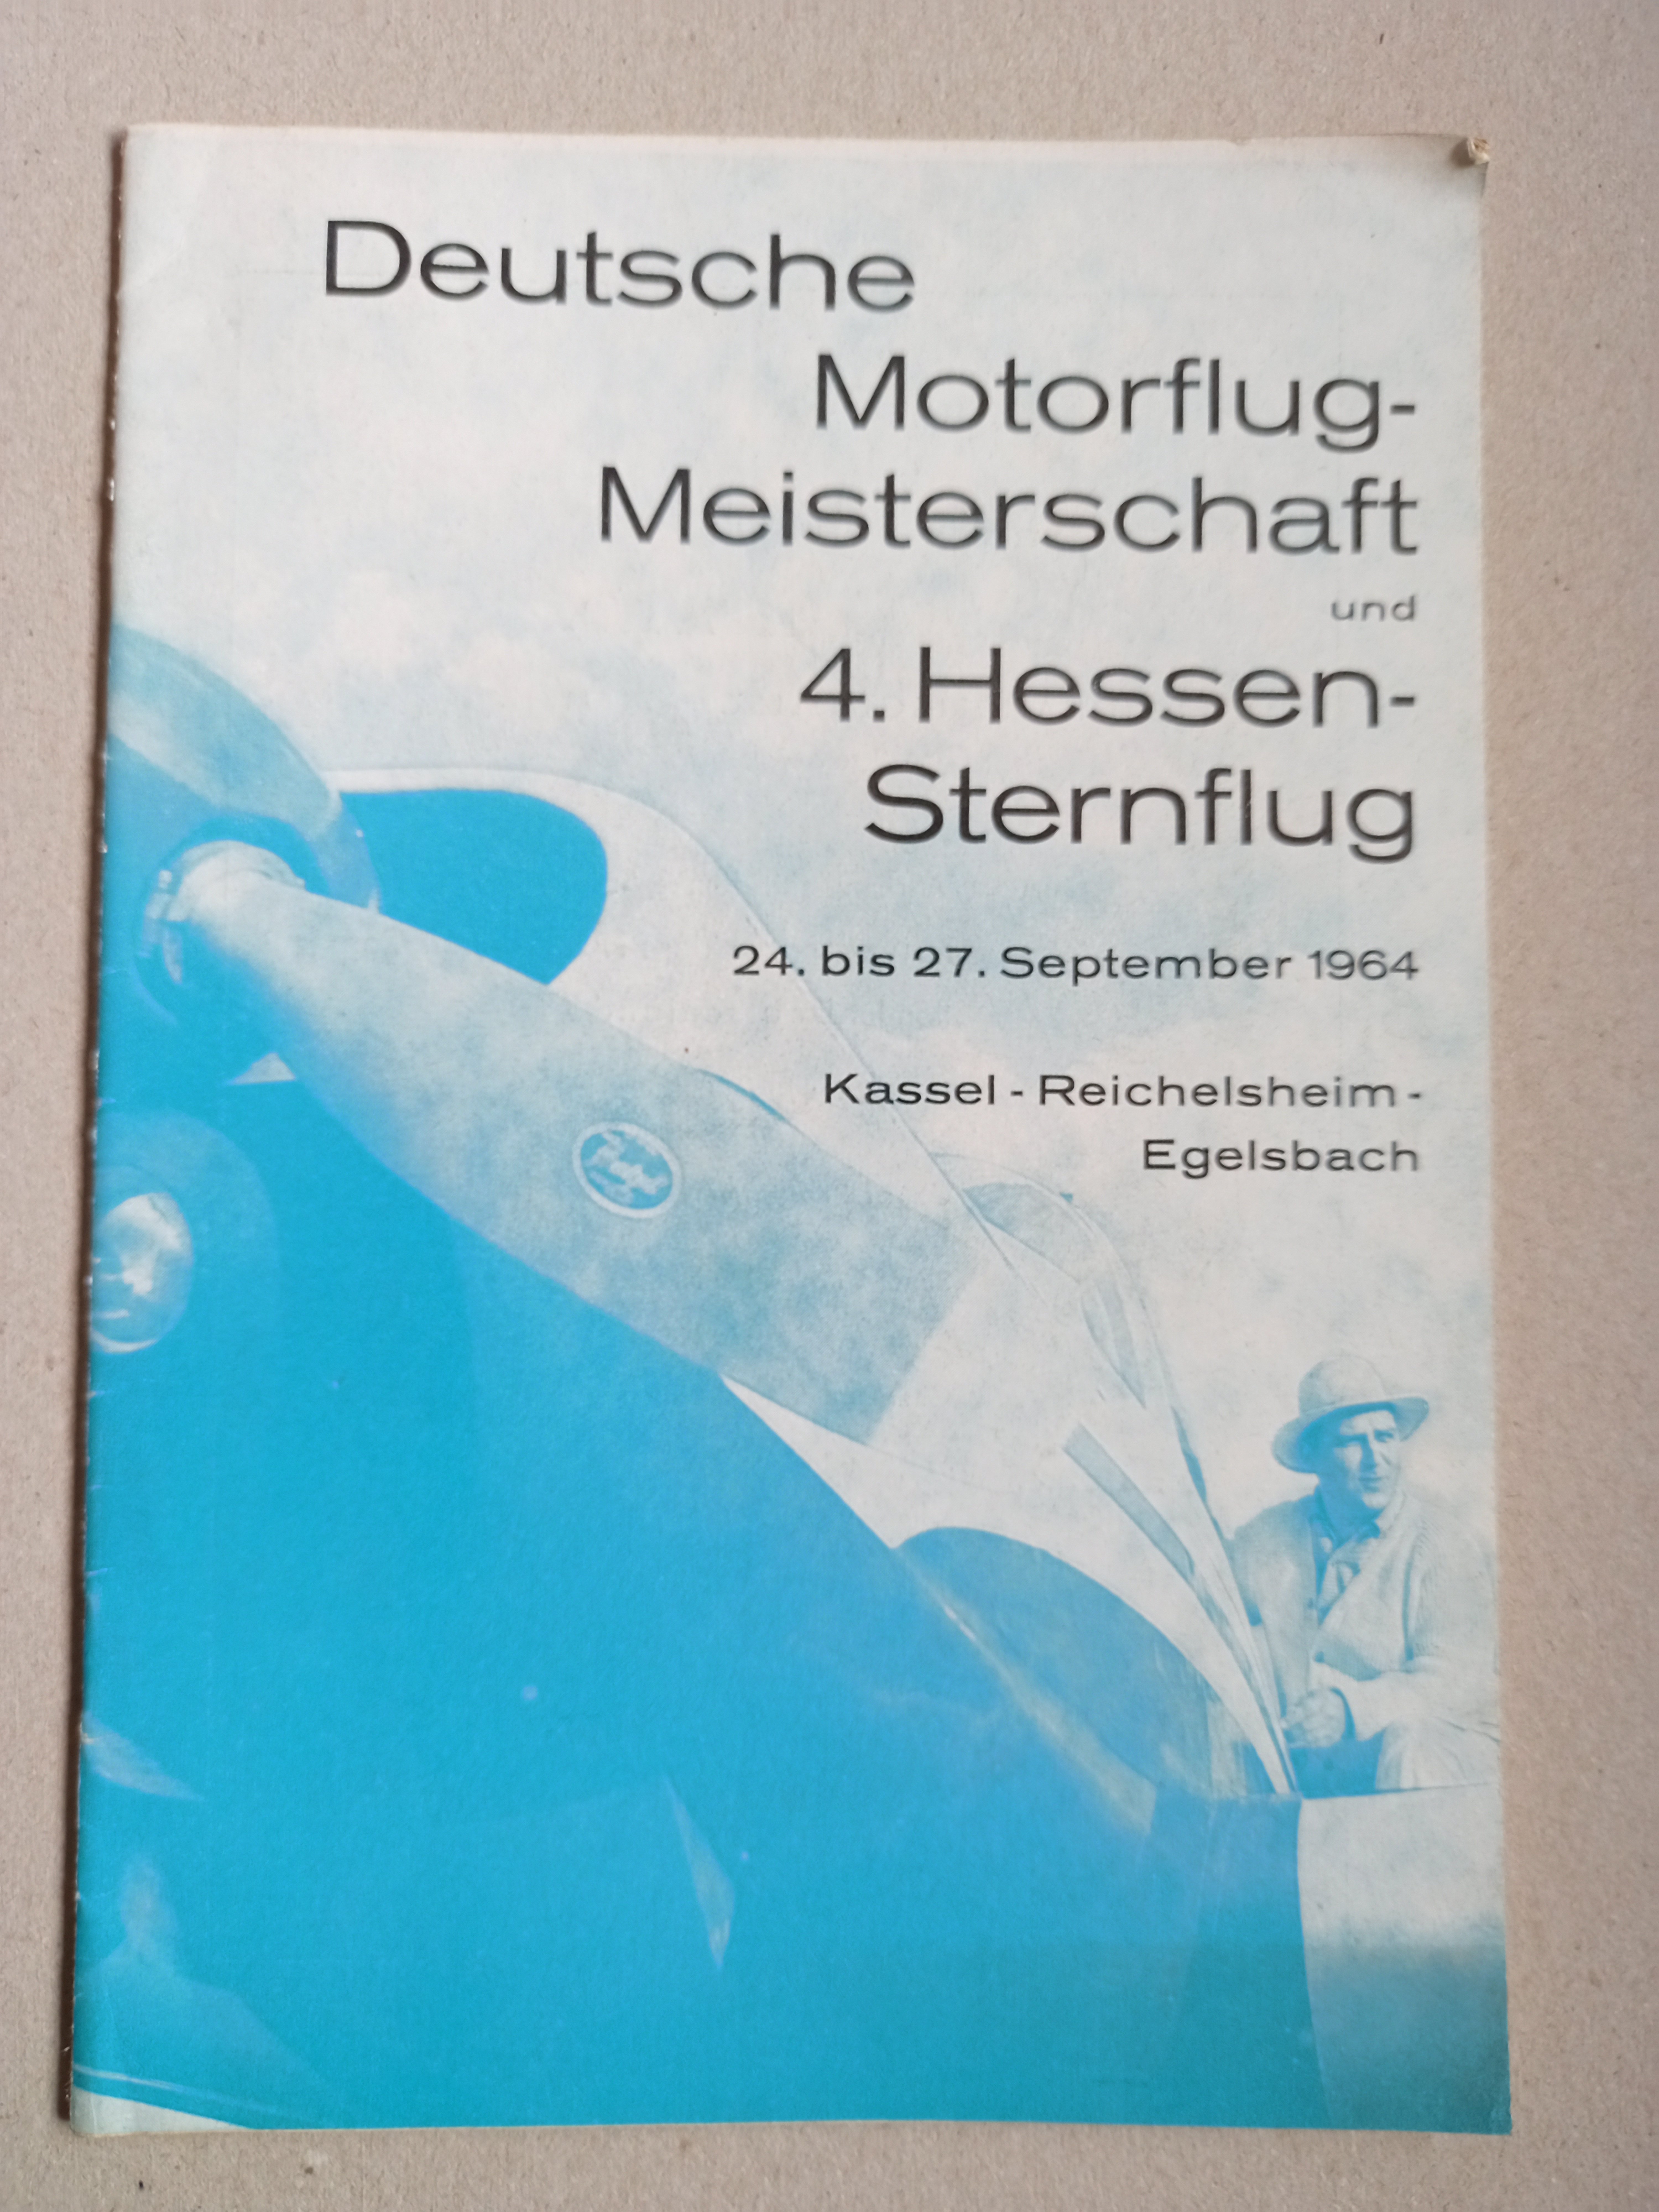 DM Motorflug 1964 + Hessensternflug (Deutsches Segelflugmuseum mit Modellflug CC BY-NC-SA)